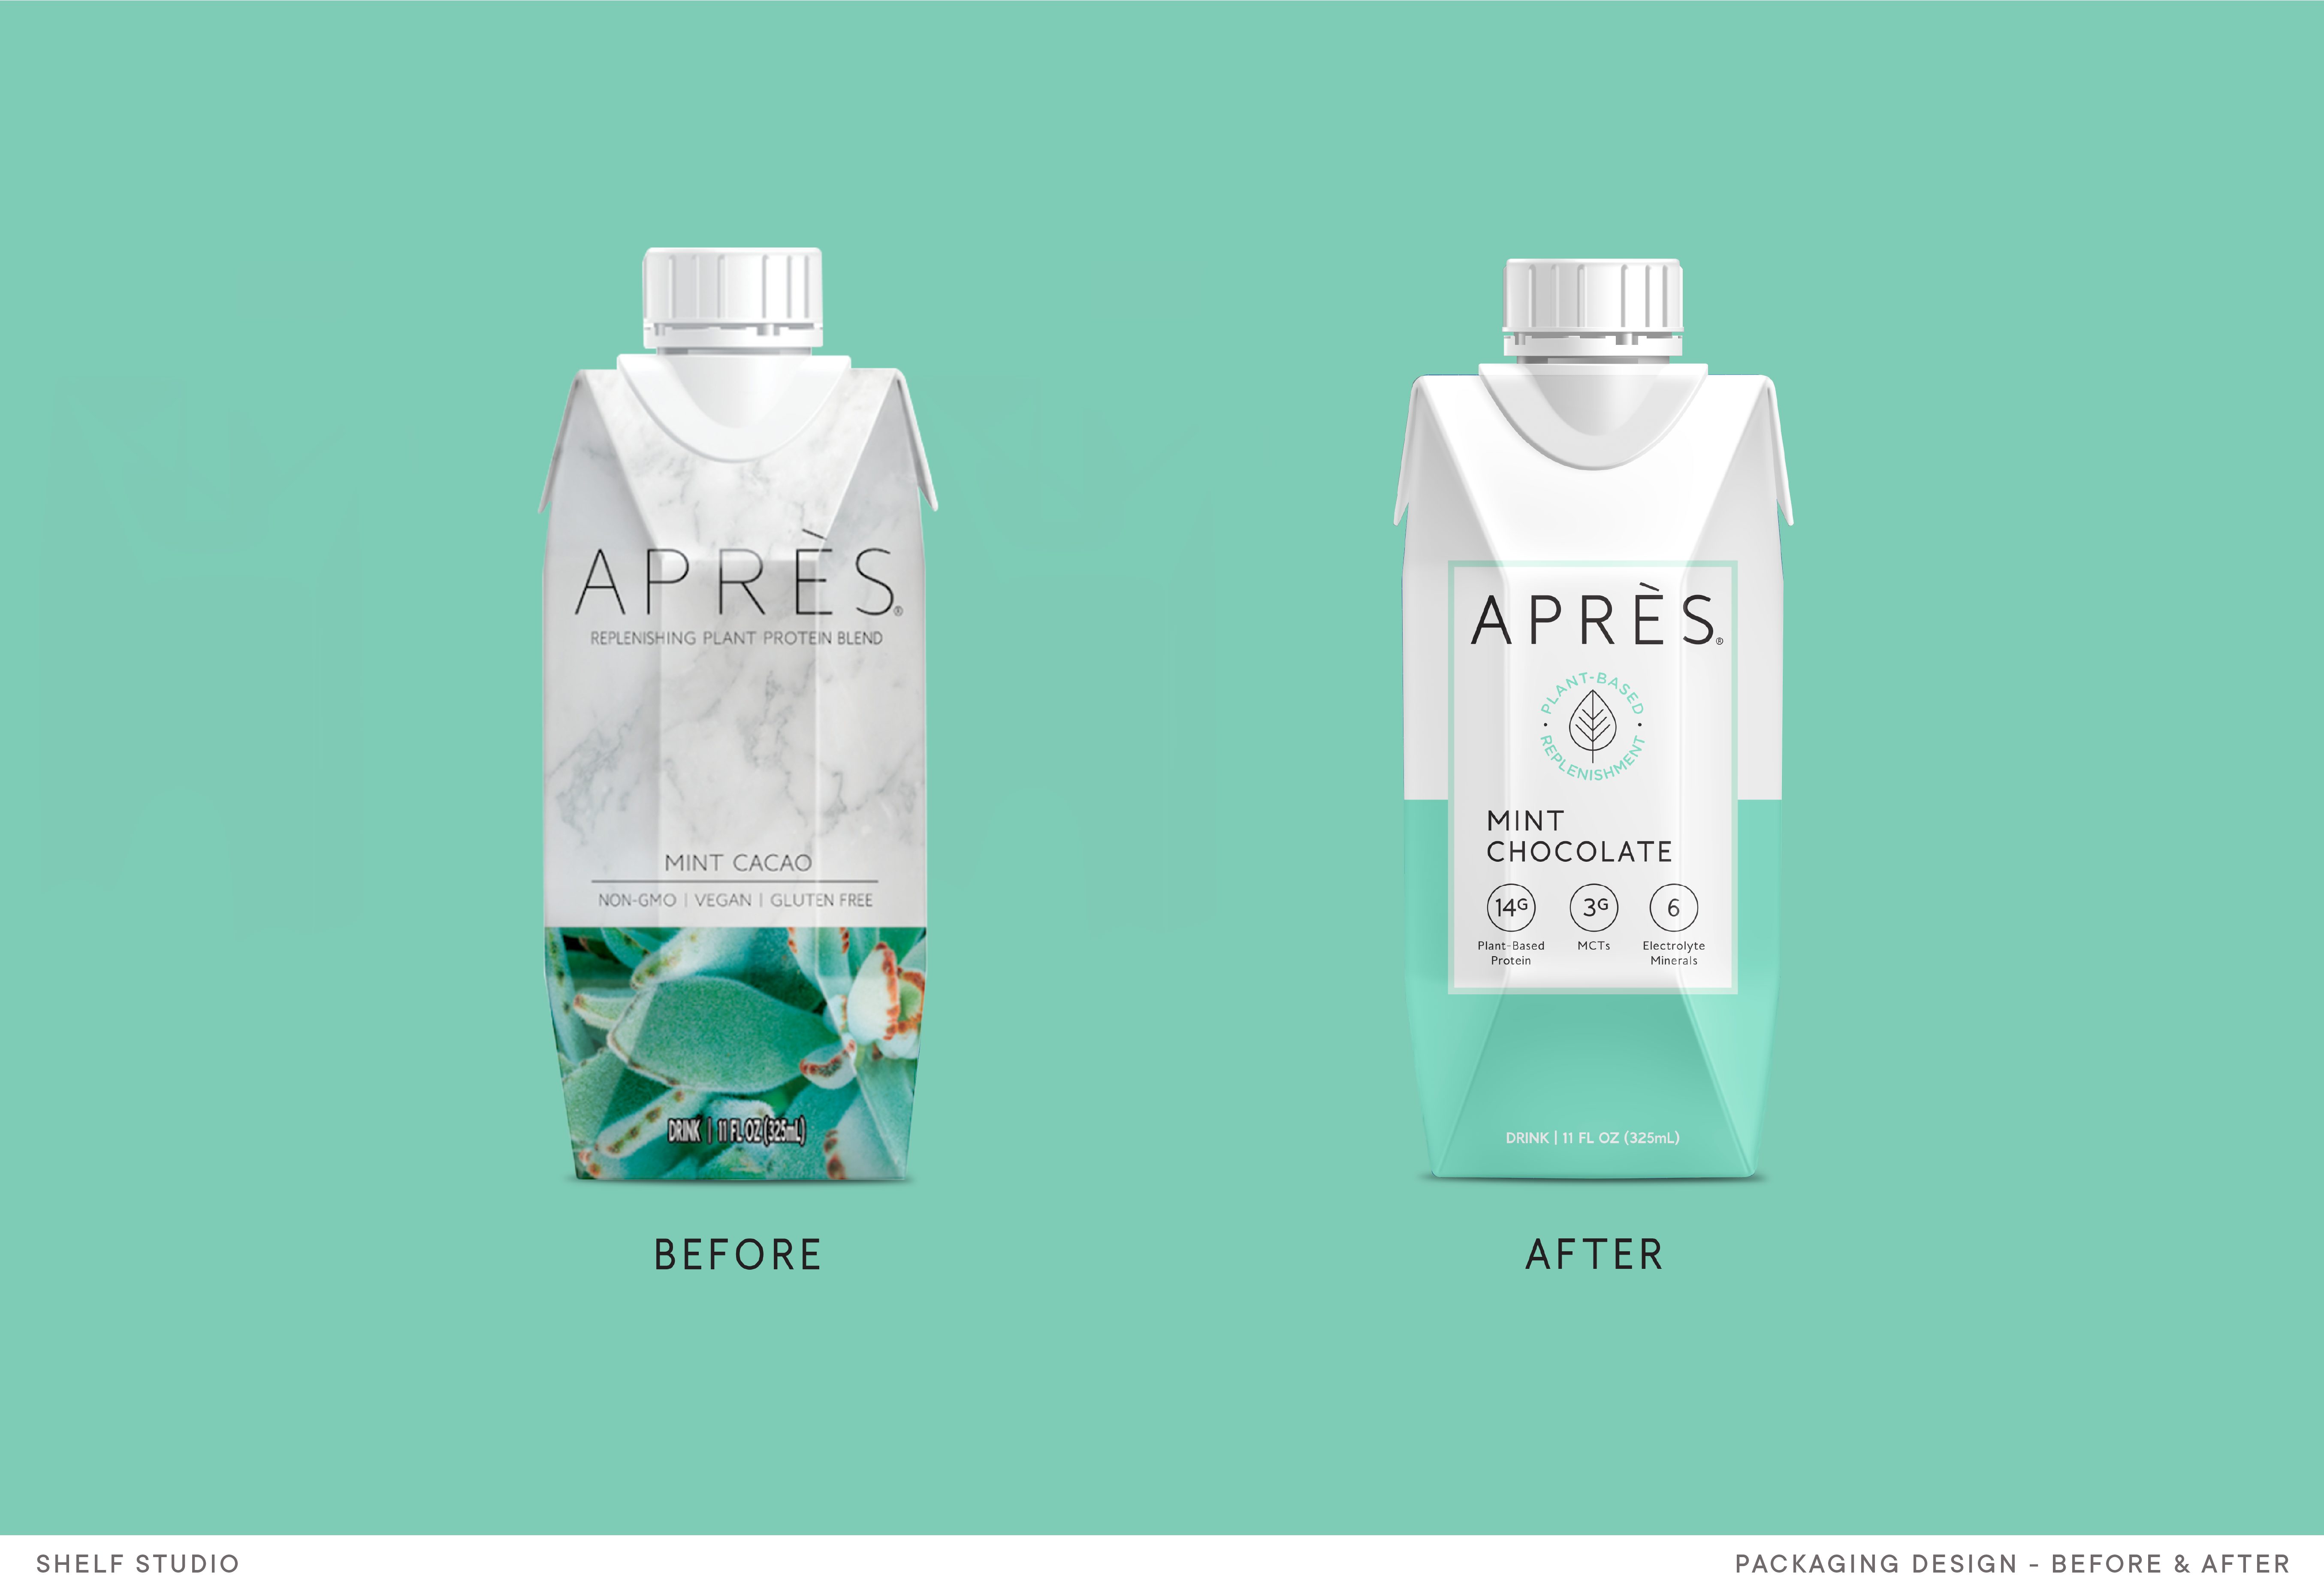 SHELFWEB_Apres_Images_PackagingDesign-Before&After